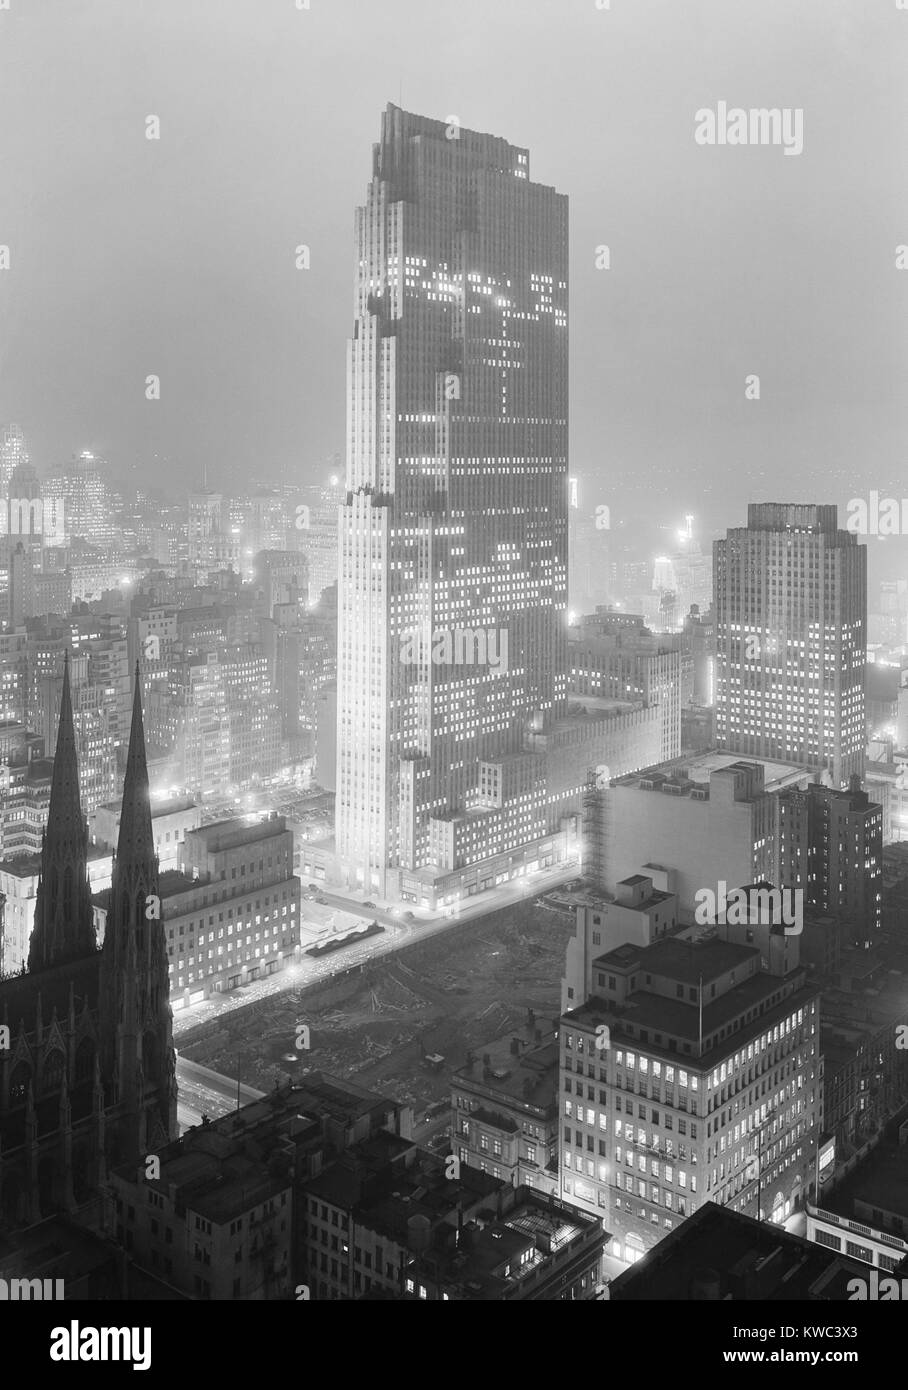 Nacht Blick vom Rockefeller Center und RCA-Gebäude von 515 Madison Avenue am Dez. 5, 1933. Die lose über der Straße von St. Patrick's Cathedral (unten links) erwarten. Der Komplex von 19 kommerziellen Gebäude wurde im Jahr 1939 abgeschlossen. Foto von Samuel H. Gottscho. (BSLOC 2015 14 201) Stockfoto